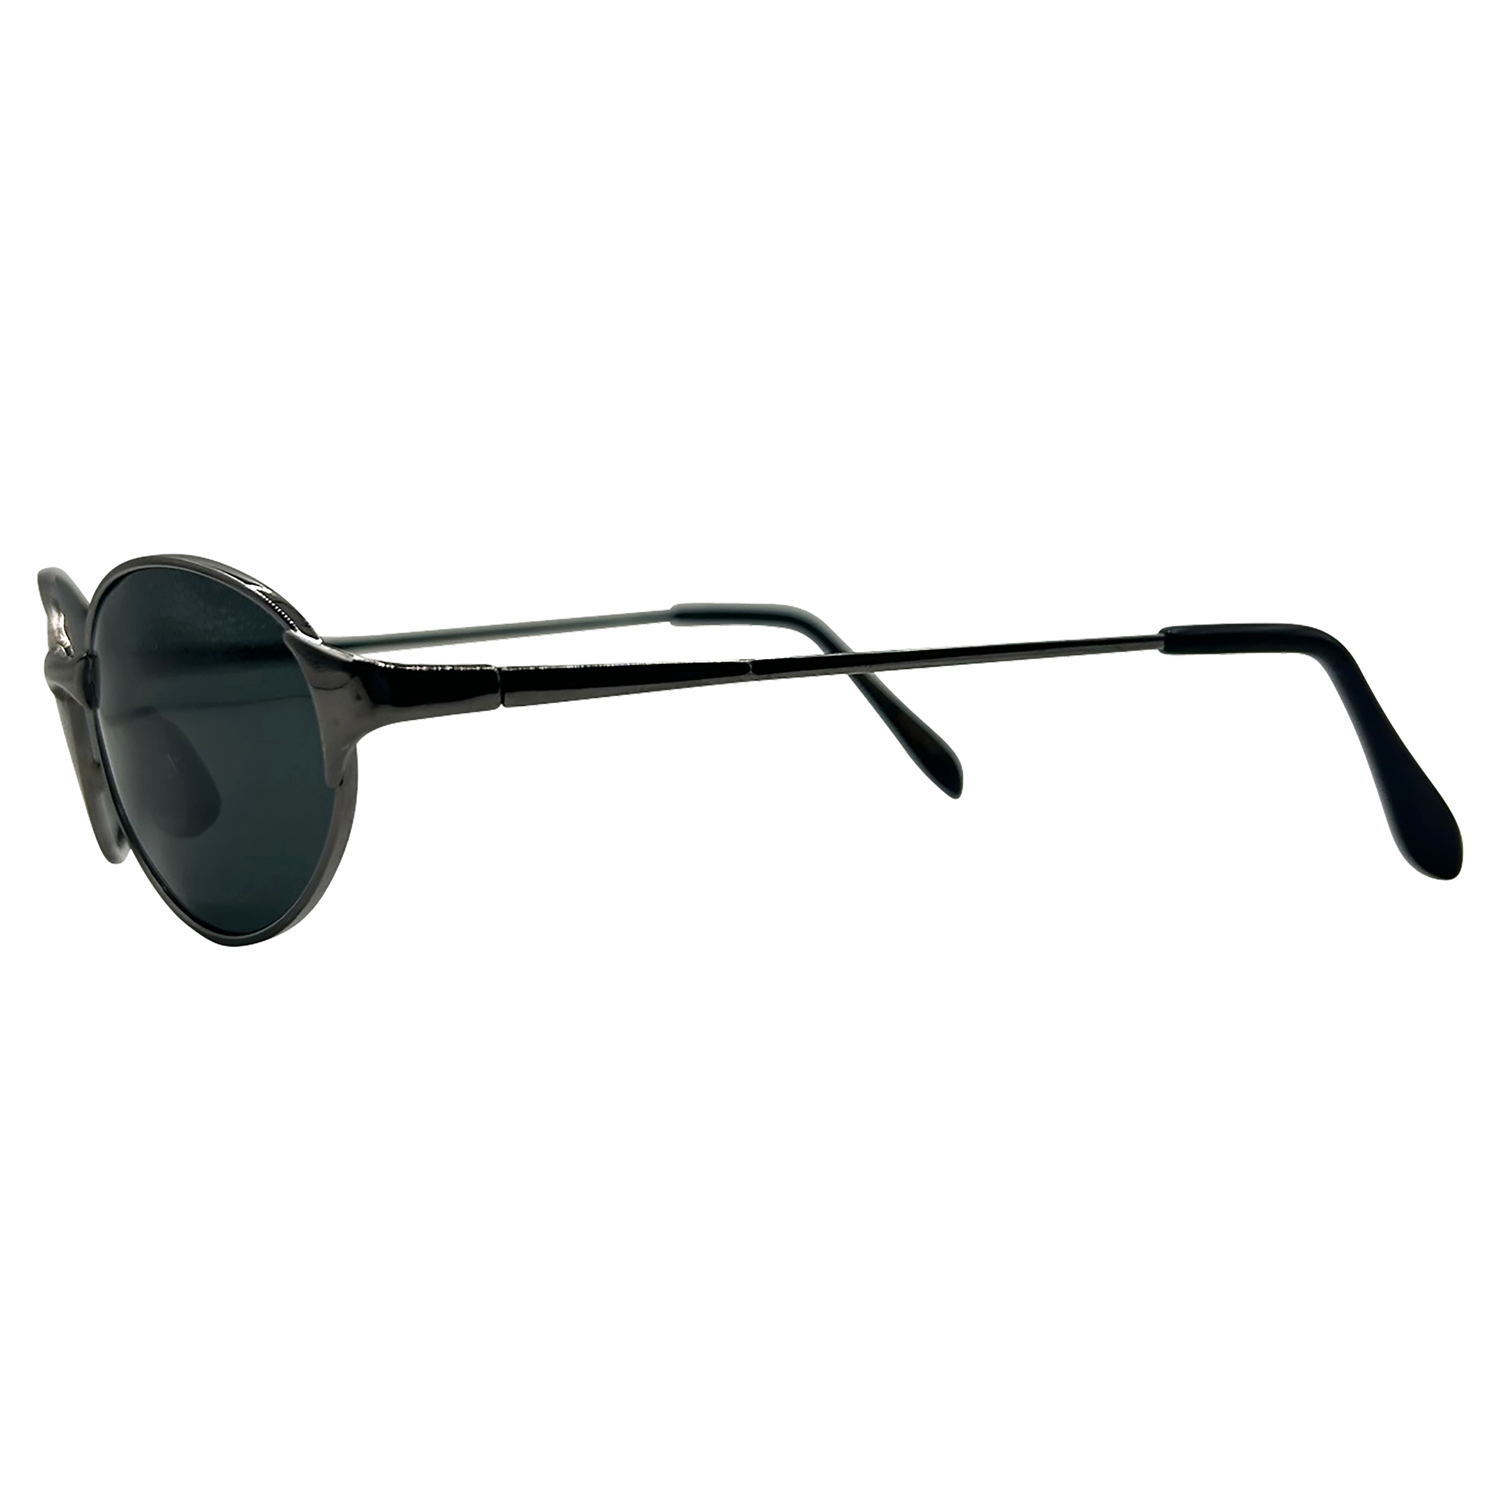 RESIST Oval Trending 90s Sunglasses